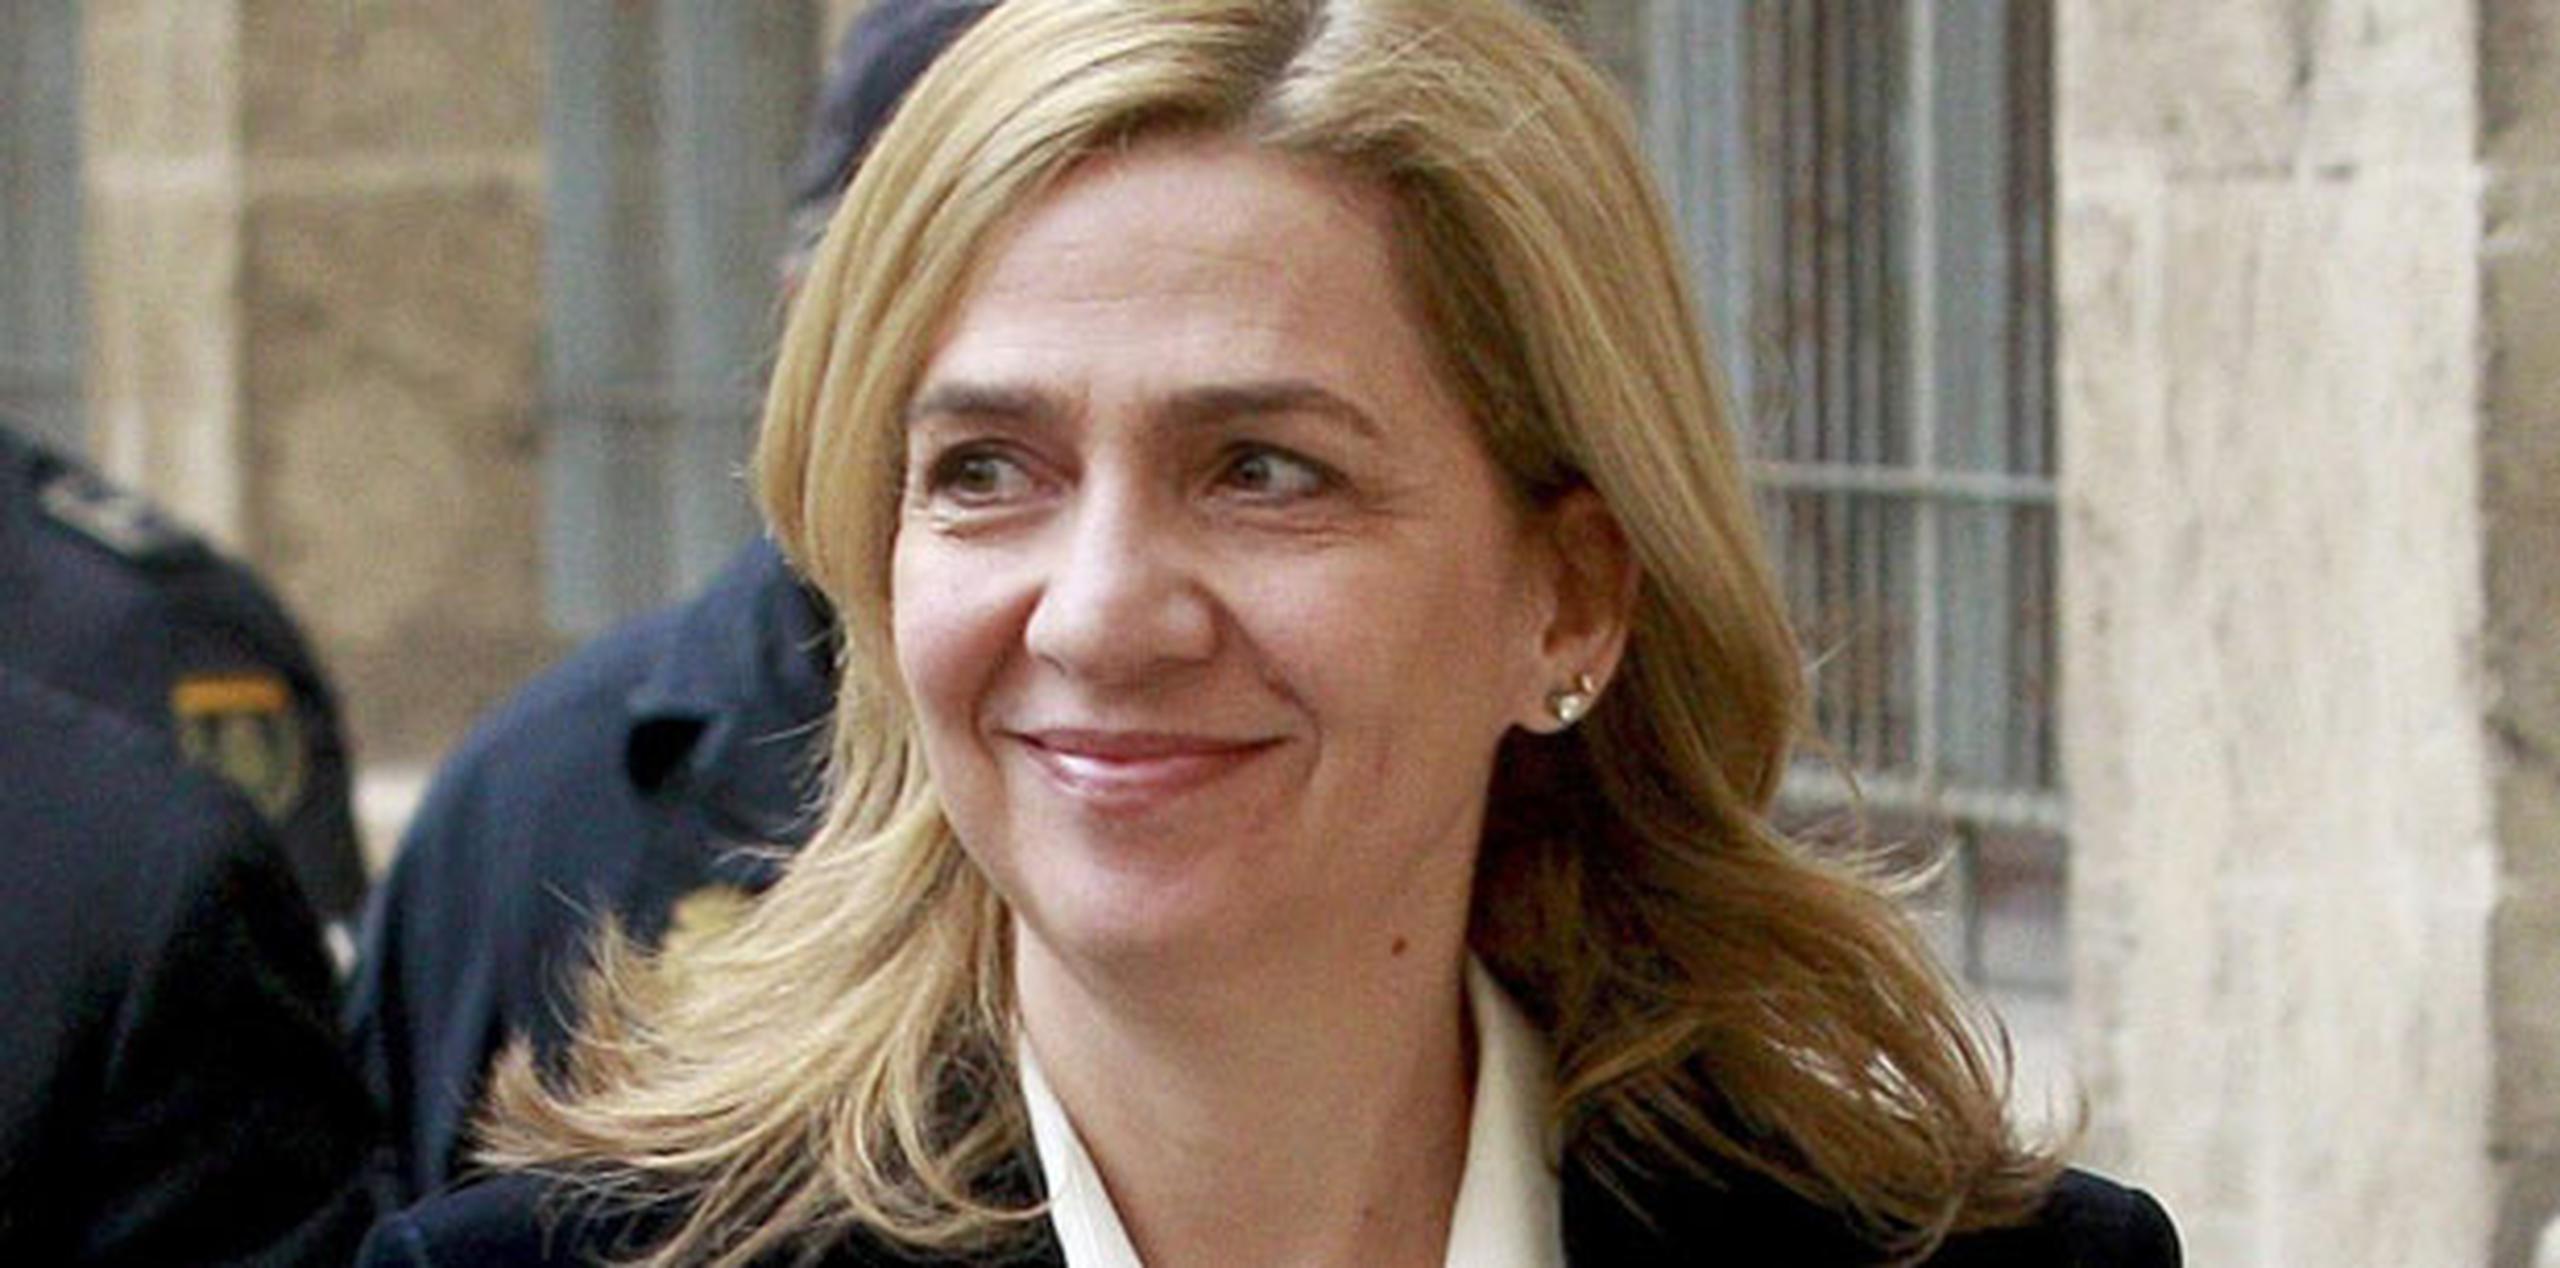 En el auto el juez instructor fija para Cristina de Borbón, de 49 años, una fianza por responsabilidad pecuniaria de 2.6 millones de euros (3.1 millones de dólares al cambio actual). (EFE)